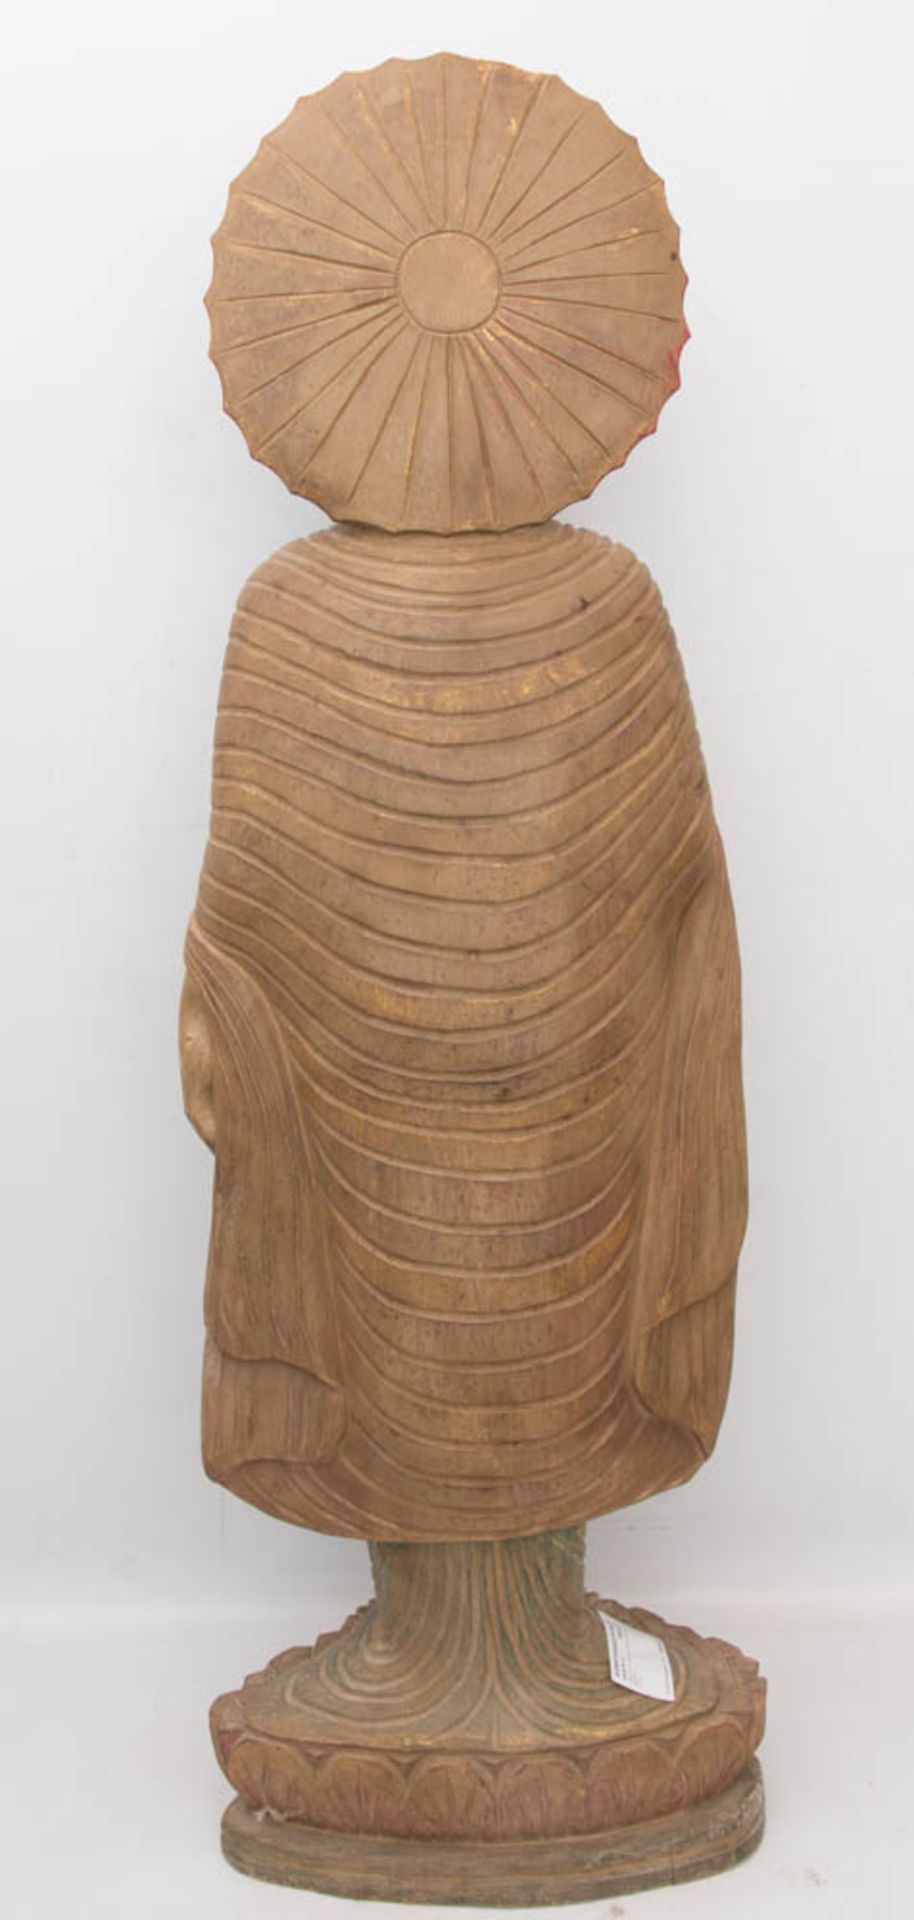 THAILÄNDISCHE BUDDHA STATUE, Holz, 20. Jh.Betende Skulptur in sehr gutem Zustand auf Sockel stehend. - Image 4 of 6